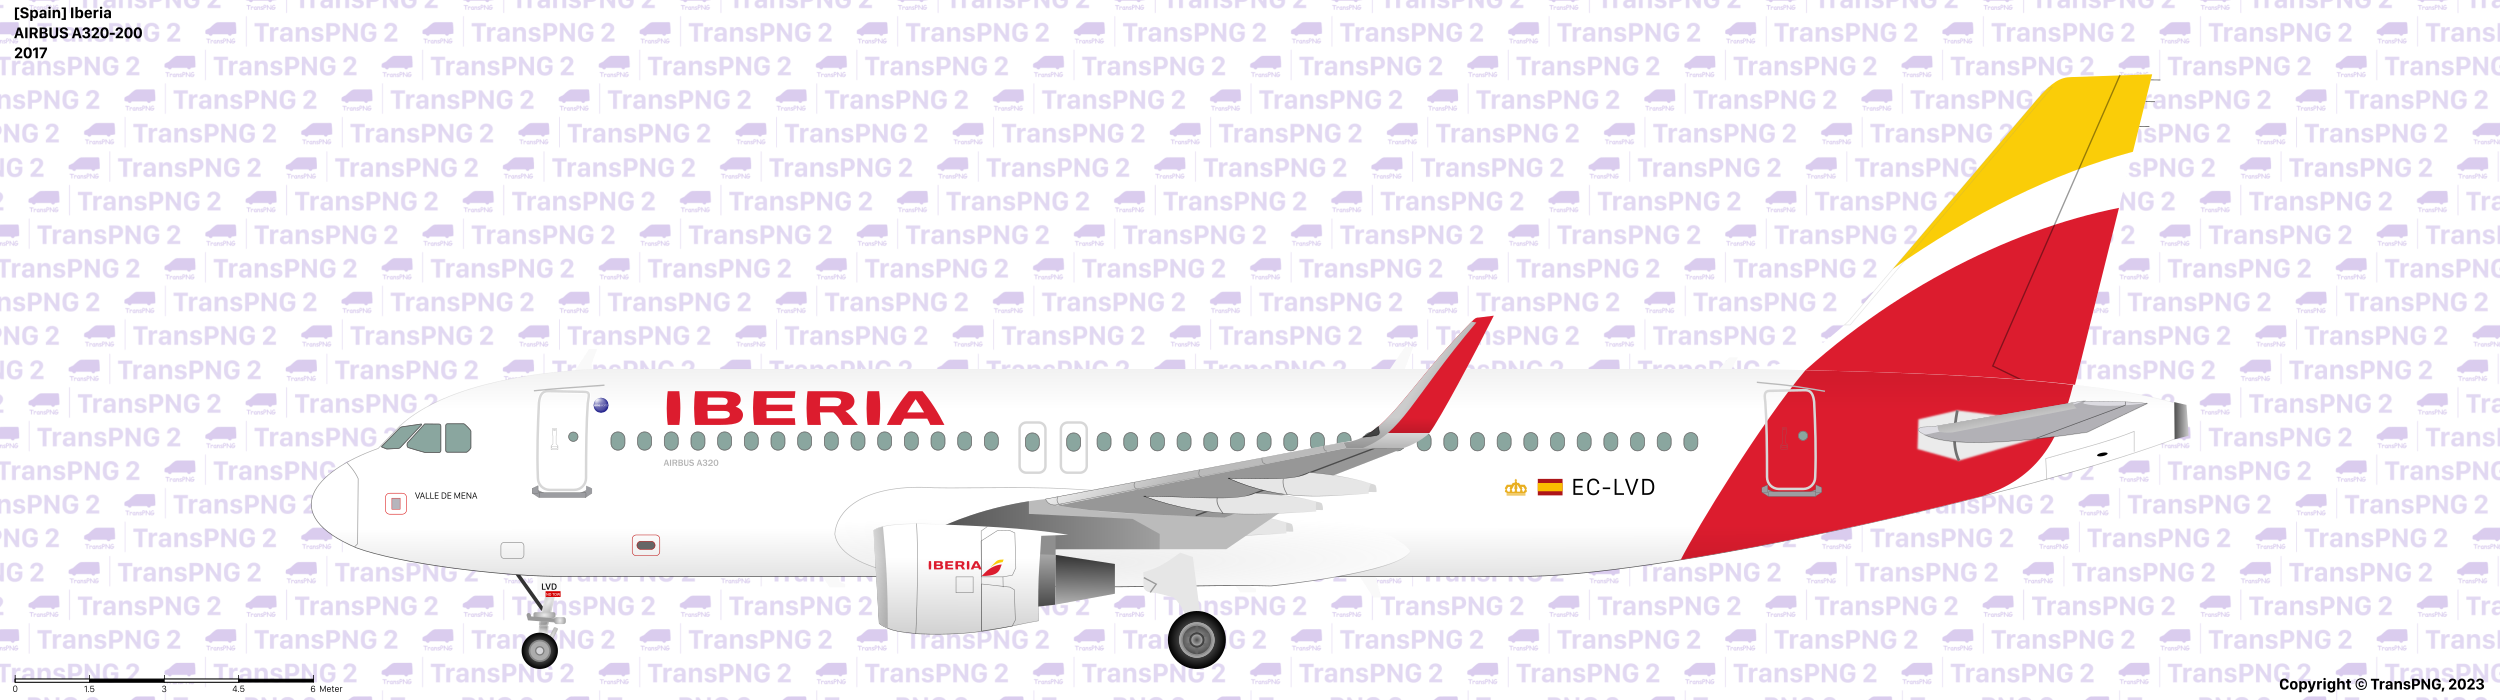 TransPNG.net | 分享世界各地多種交通工具的優秀繪圖 - 飛機 52628118774_ebdf65ce17_o